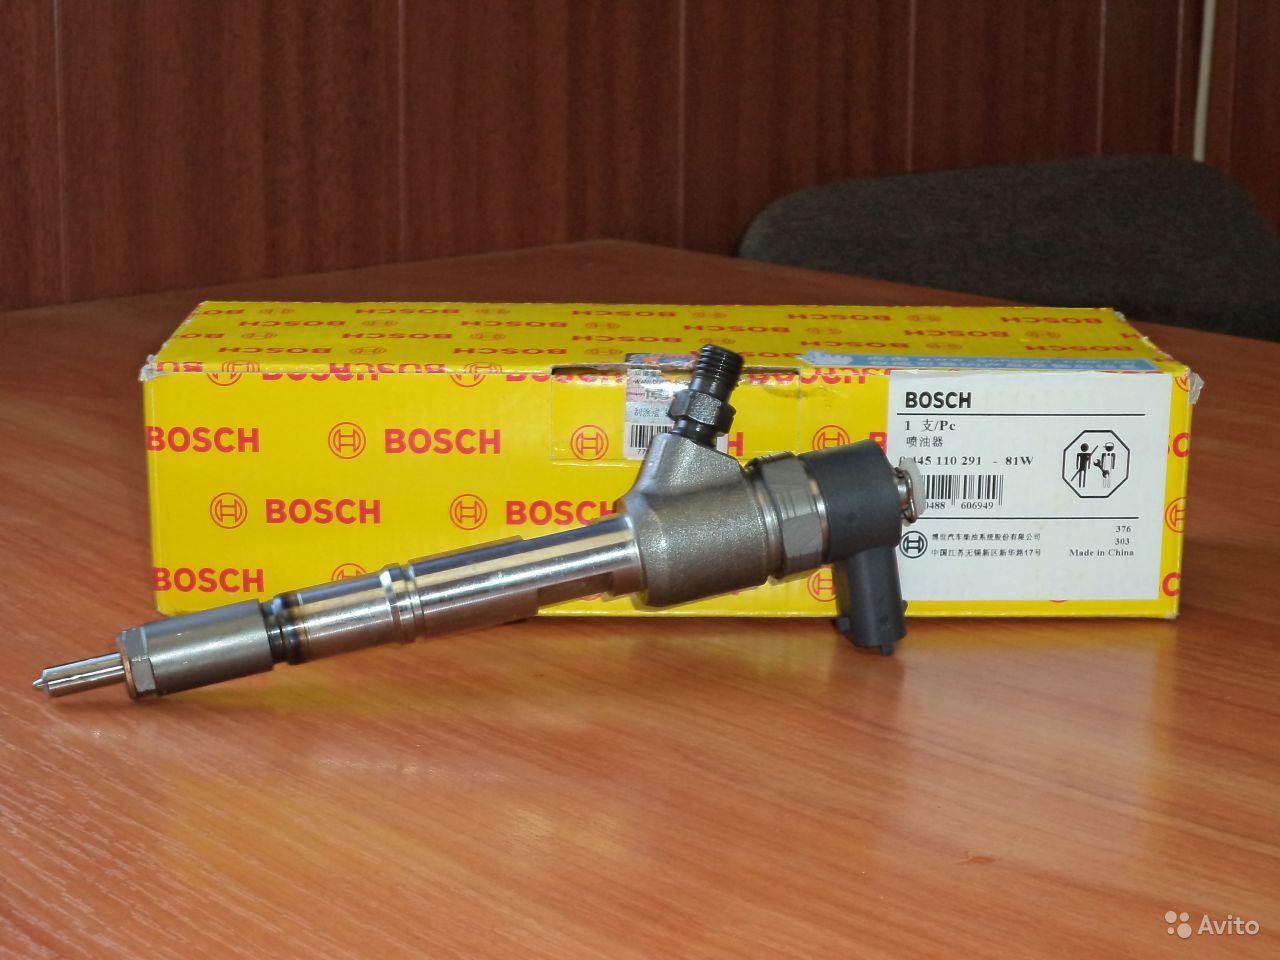 Bosch 0445110291